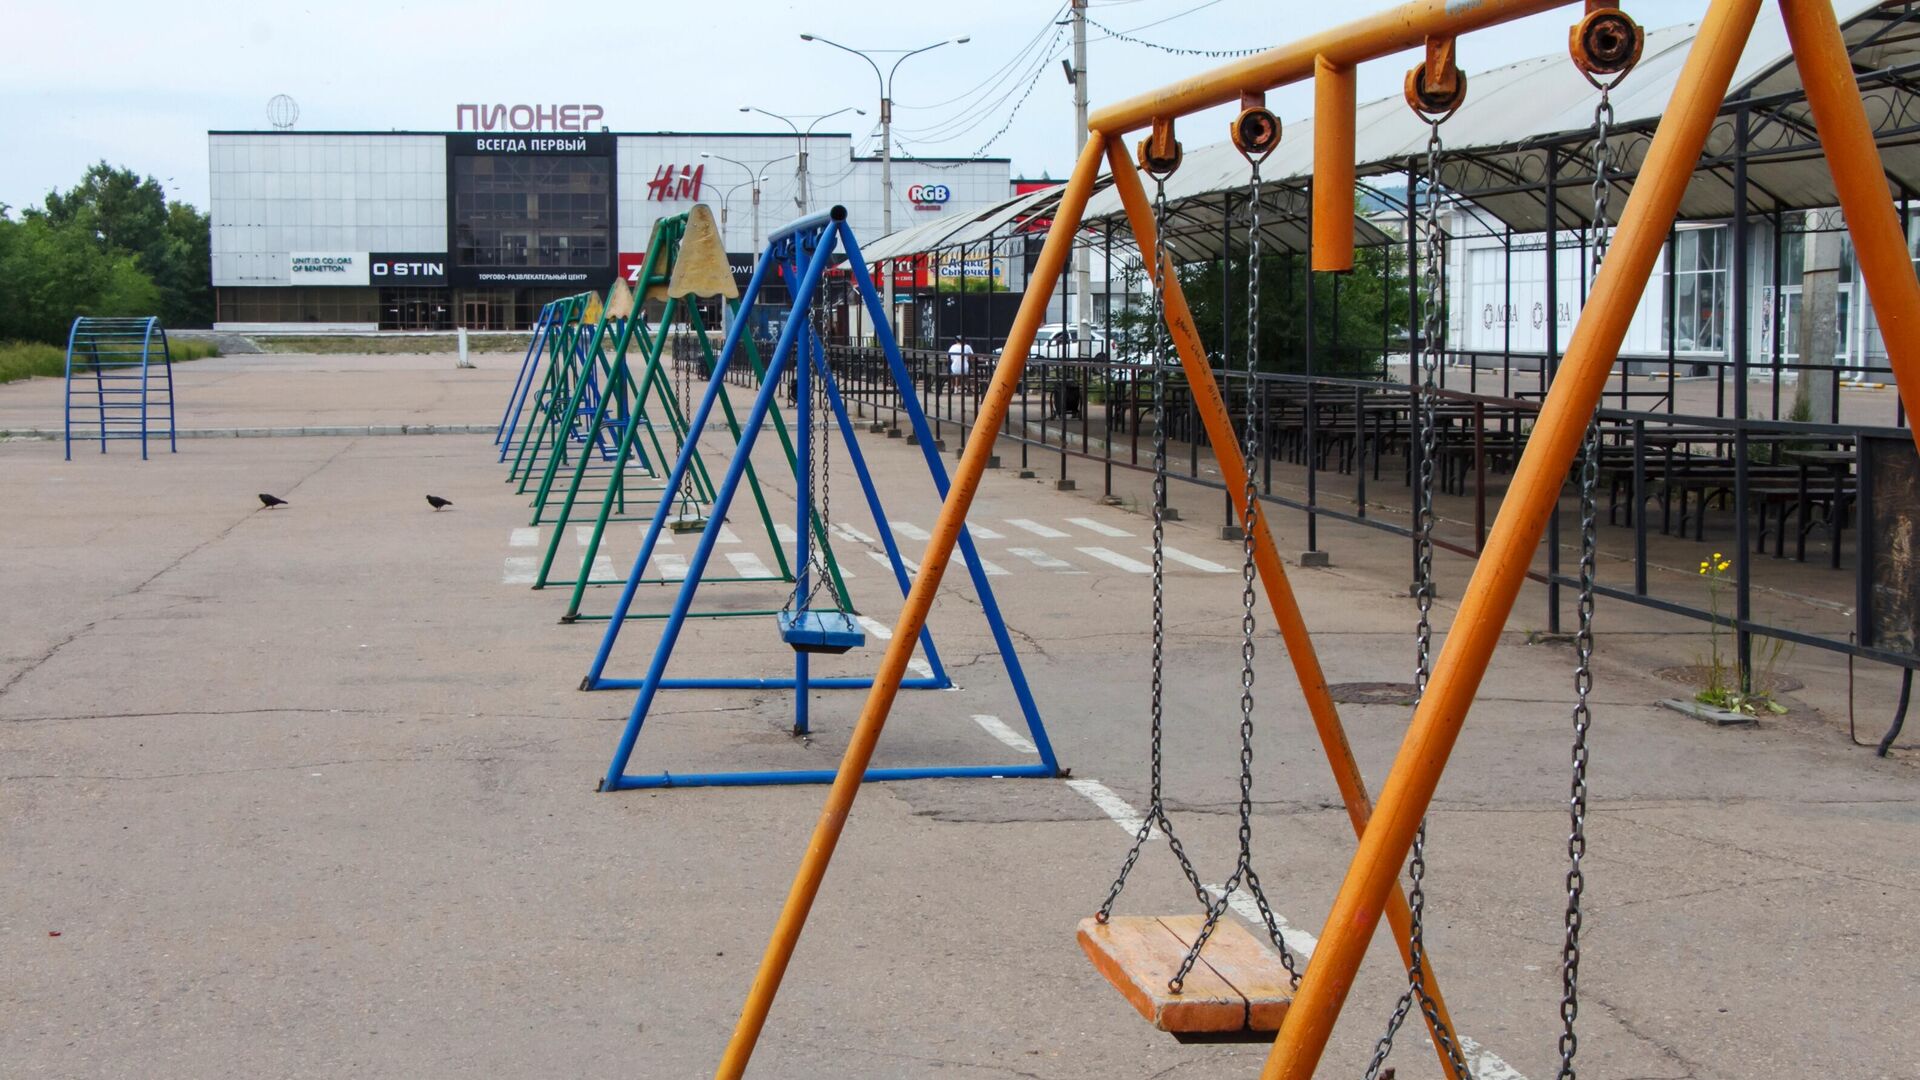 Опустевшая детская площадка у ТЦ Пионер в Улан-Удэ - РИА Новости, 1920, 30.06.2021